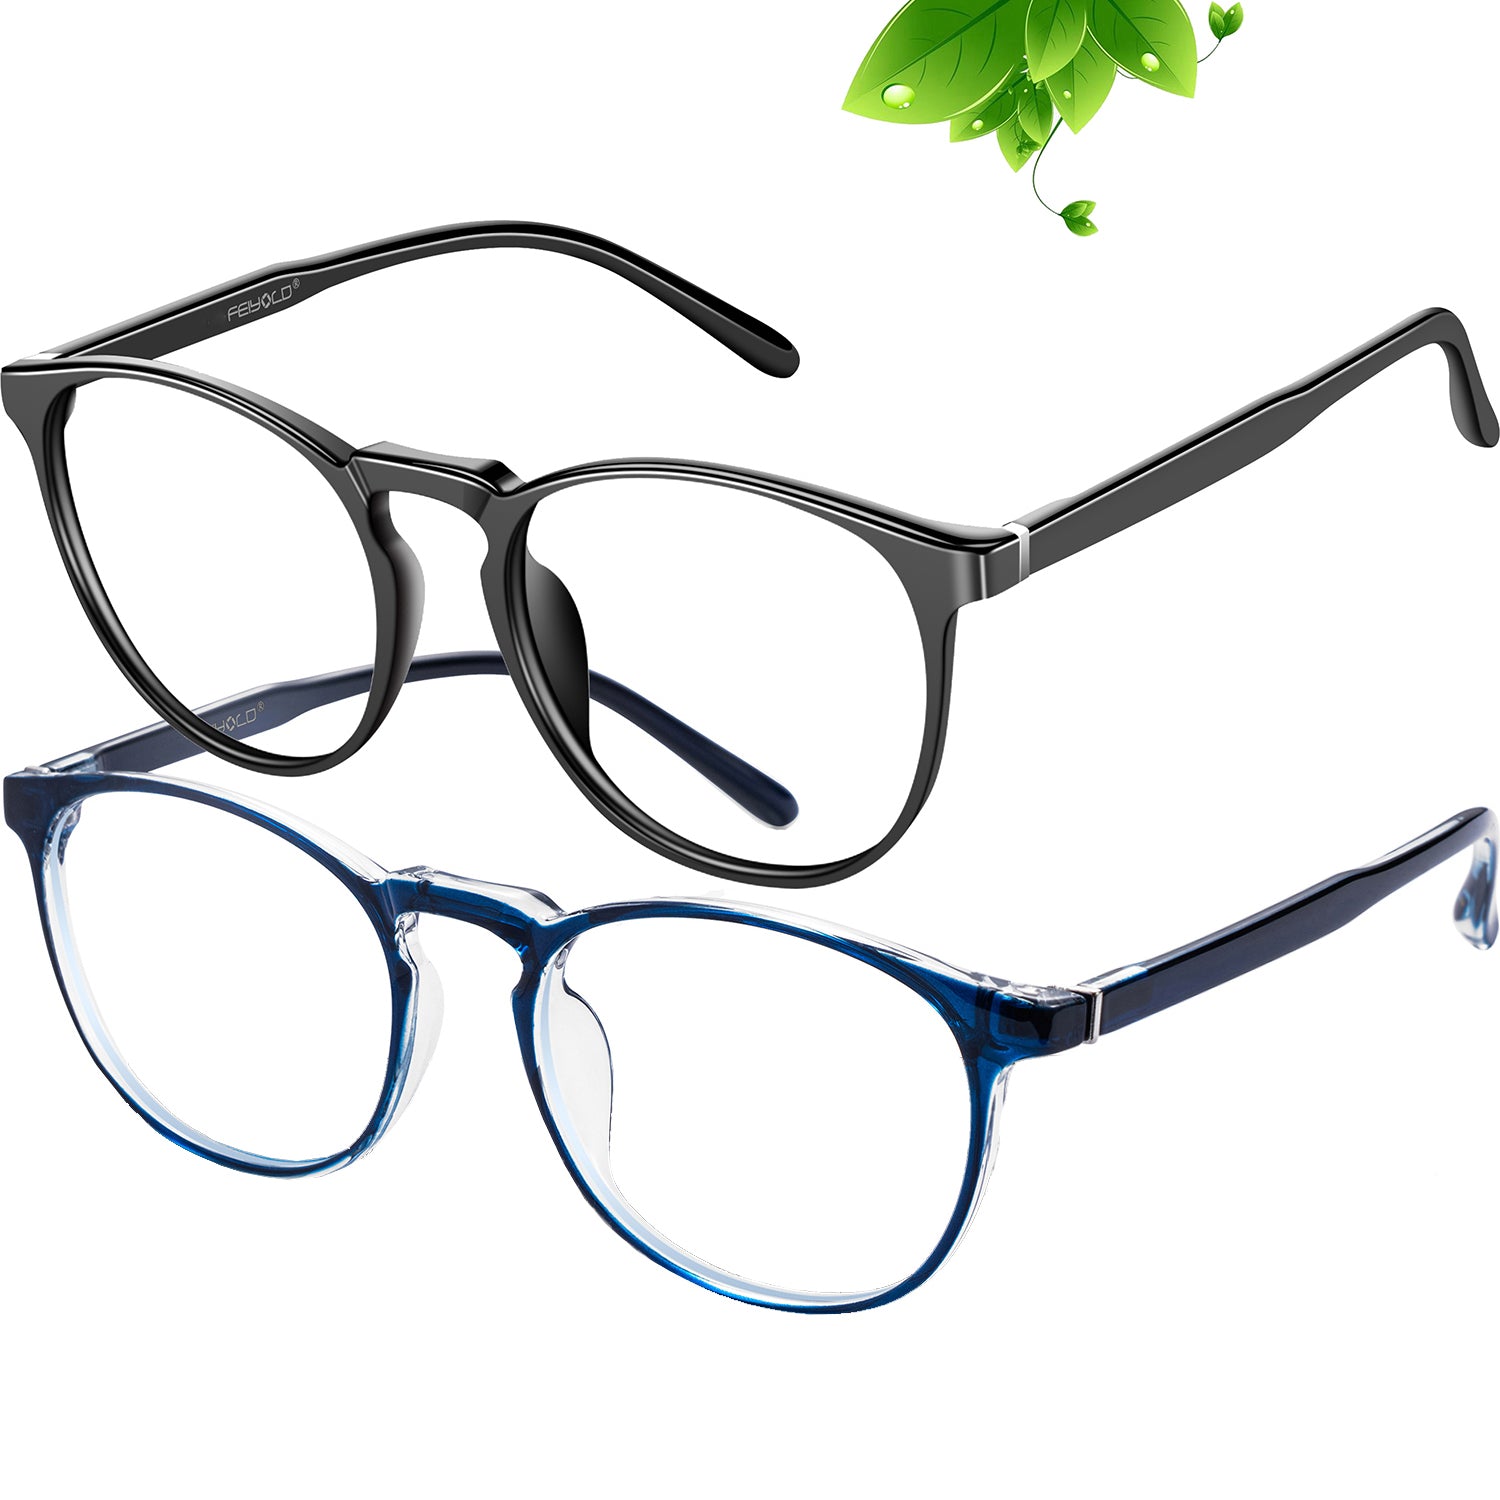 FEIYOLD Blue Light Blocking Glasses Women/Men,Retro Round Anti Eyestrain Computer Gaming Glasses(Black+Blue)